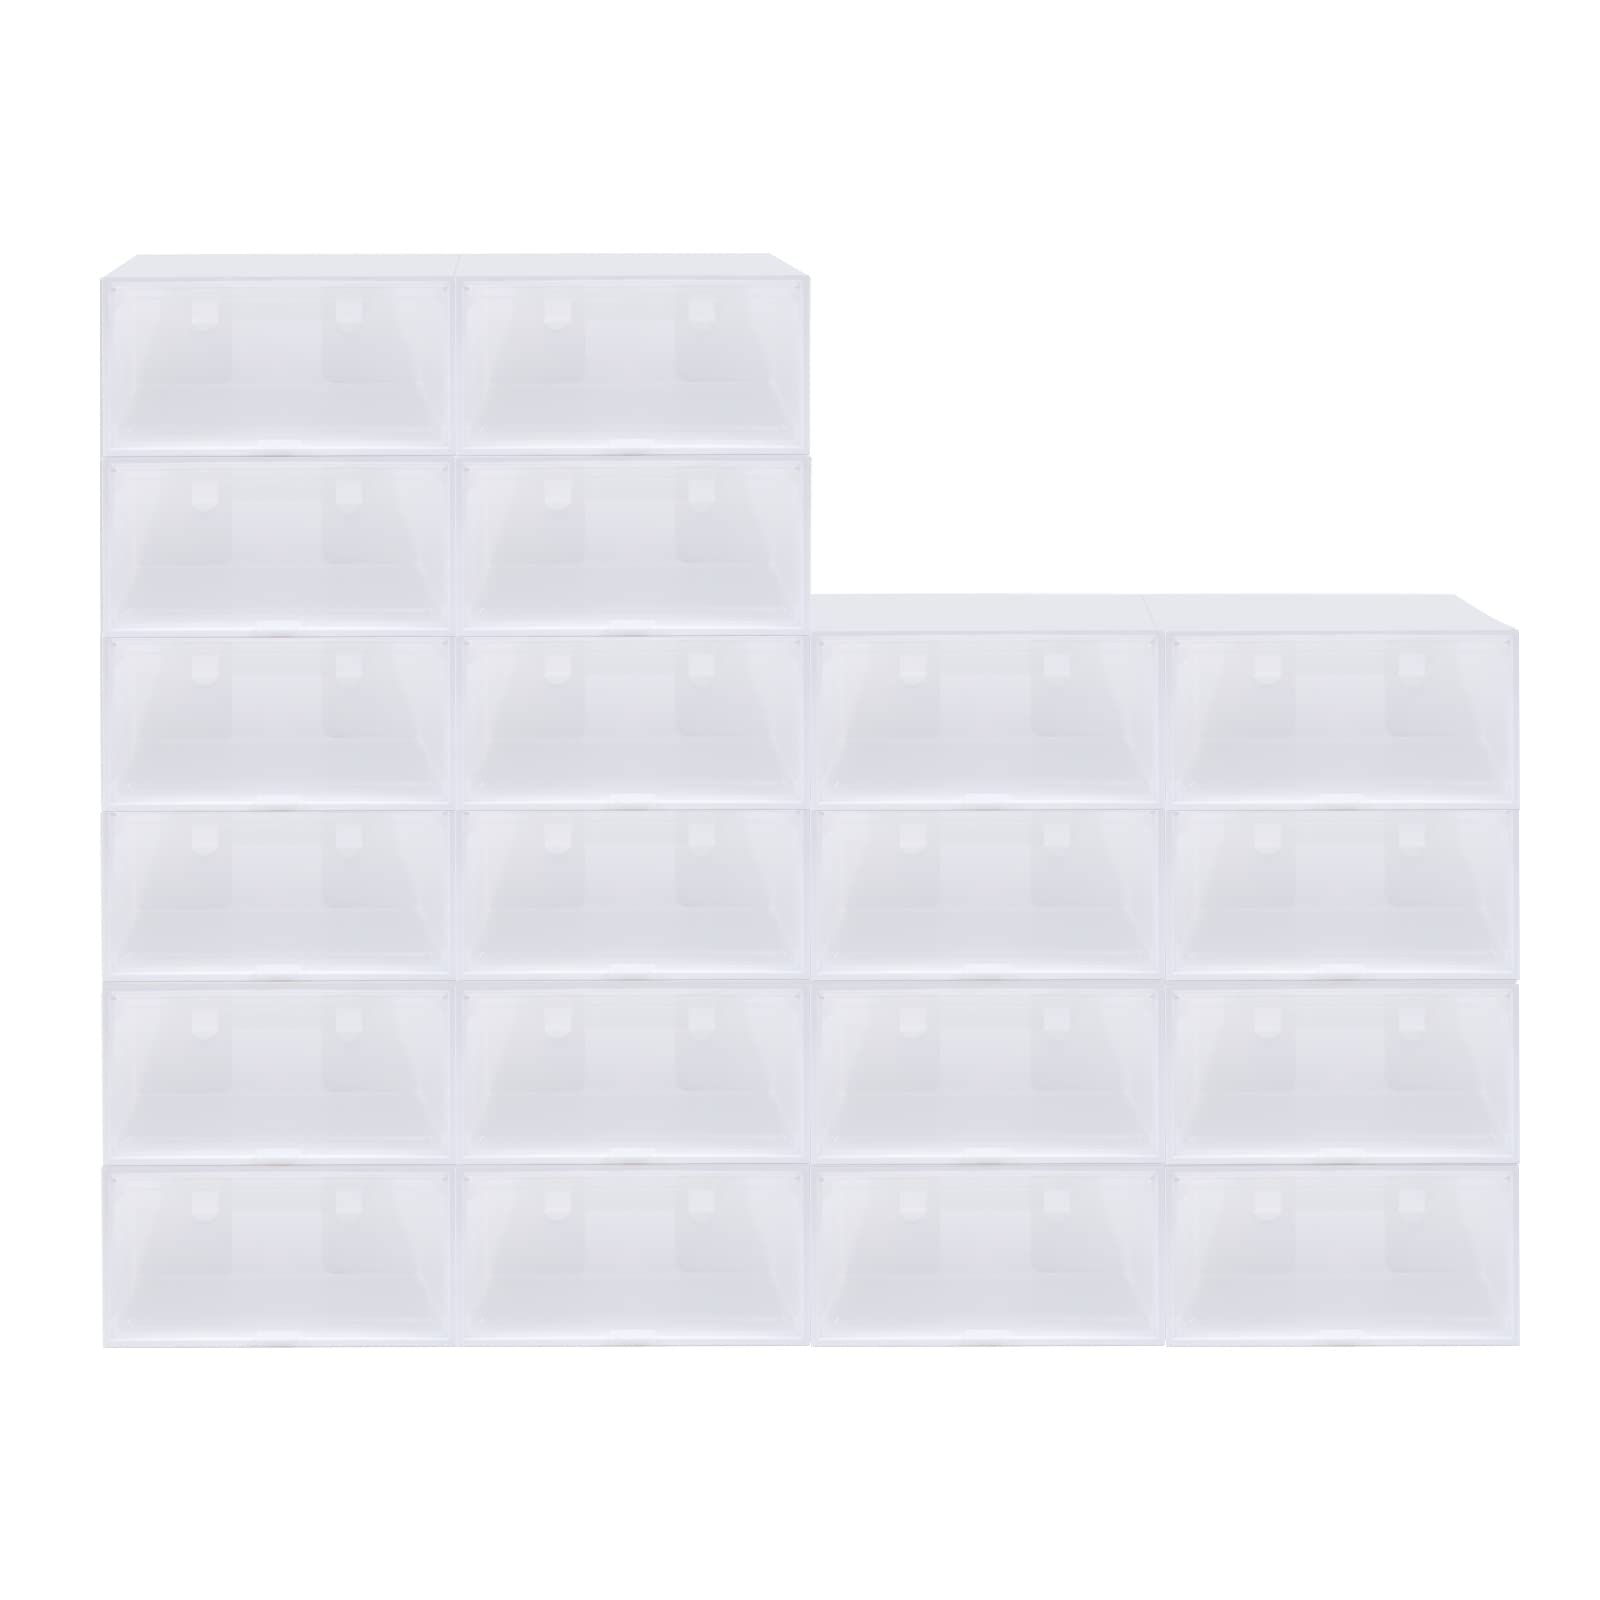 Boîtes à chaussures transparentes blanches empilables en plastique